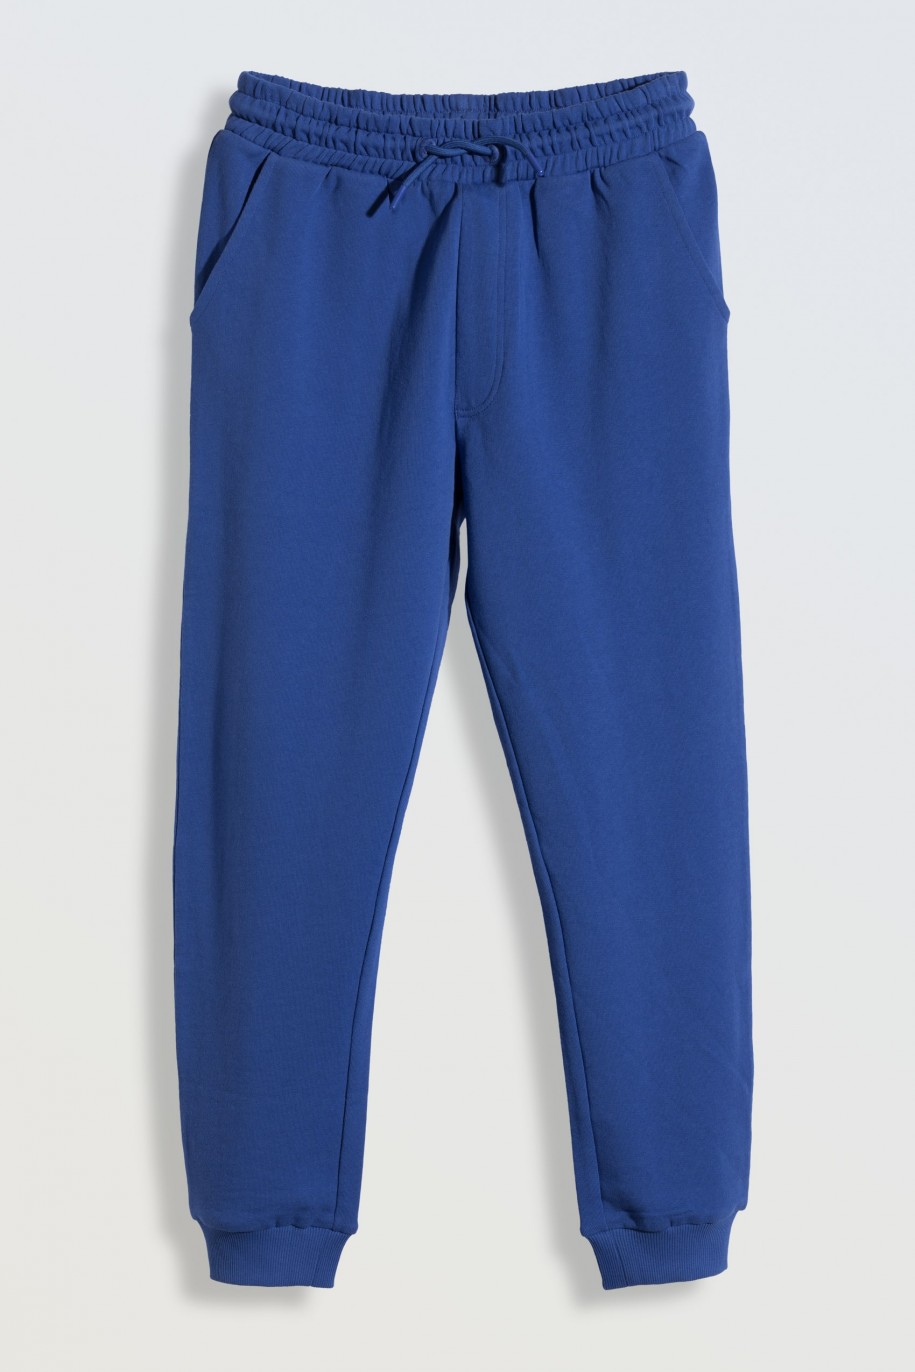 Niebieskie spodnie dresowe z nadrukiem z tyłu - 46183